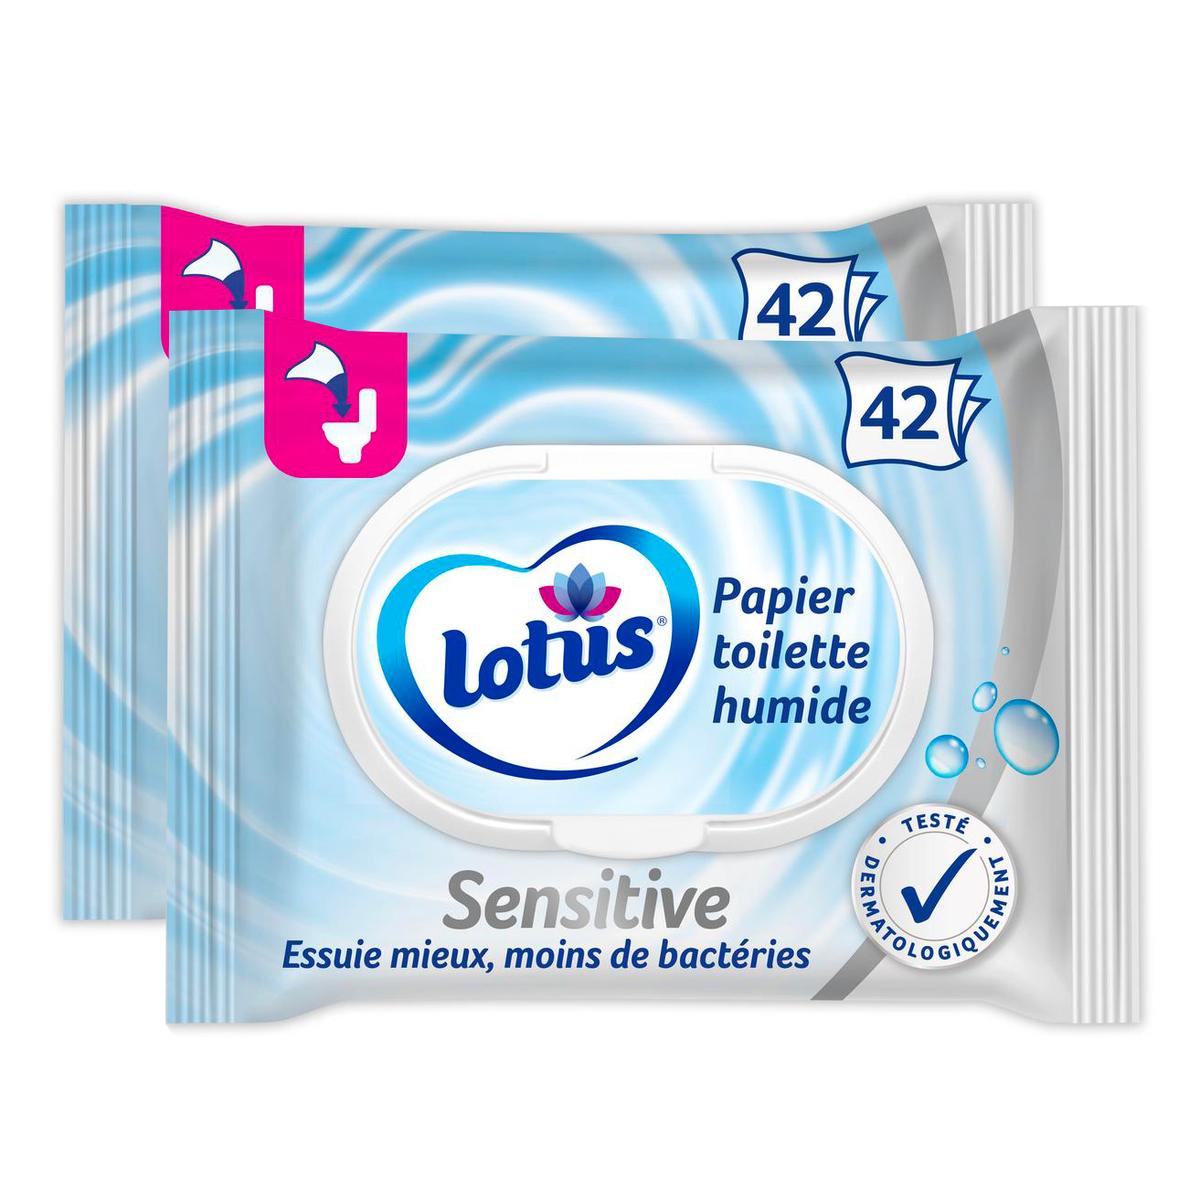 Promotion Lotus Lingette Papier toilette humide Pure, Lot de 2x42 lingettes